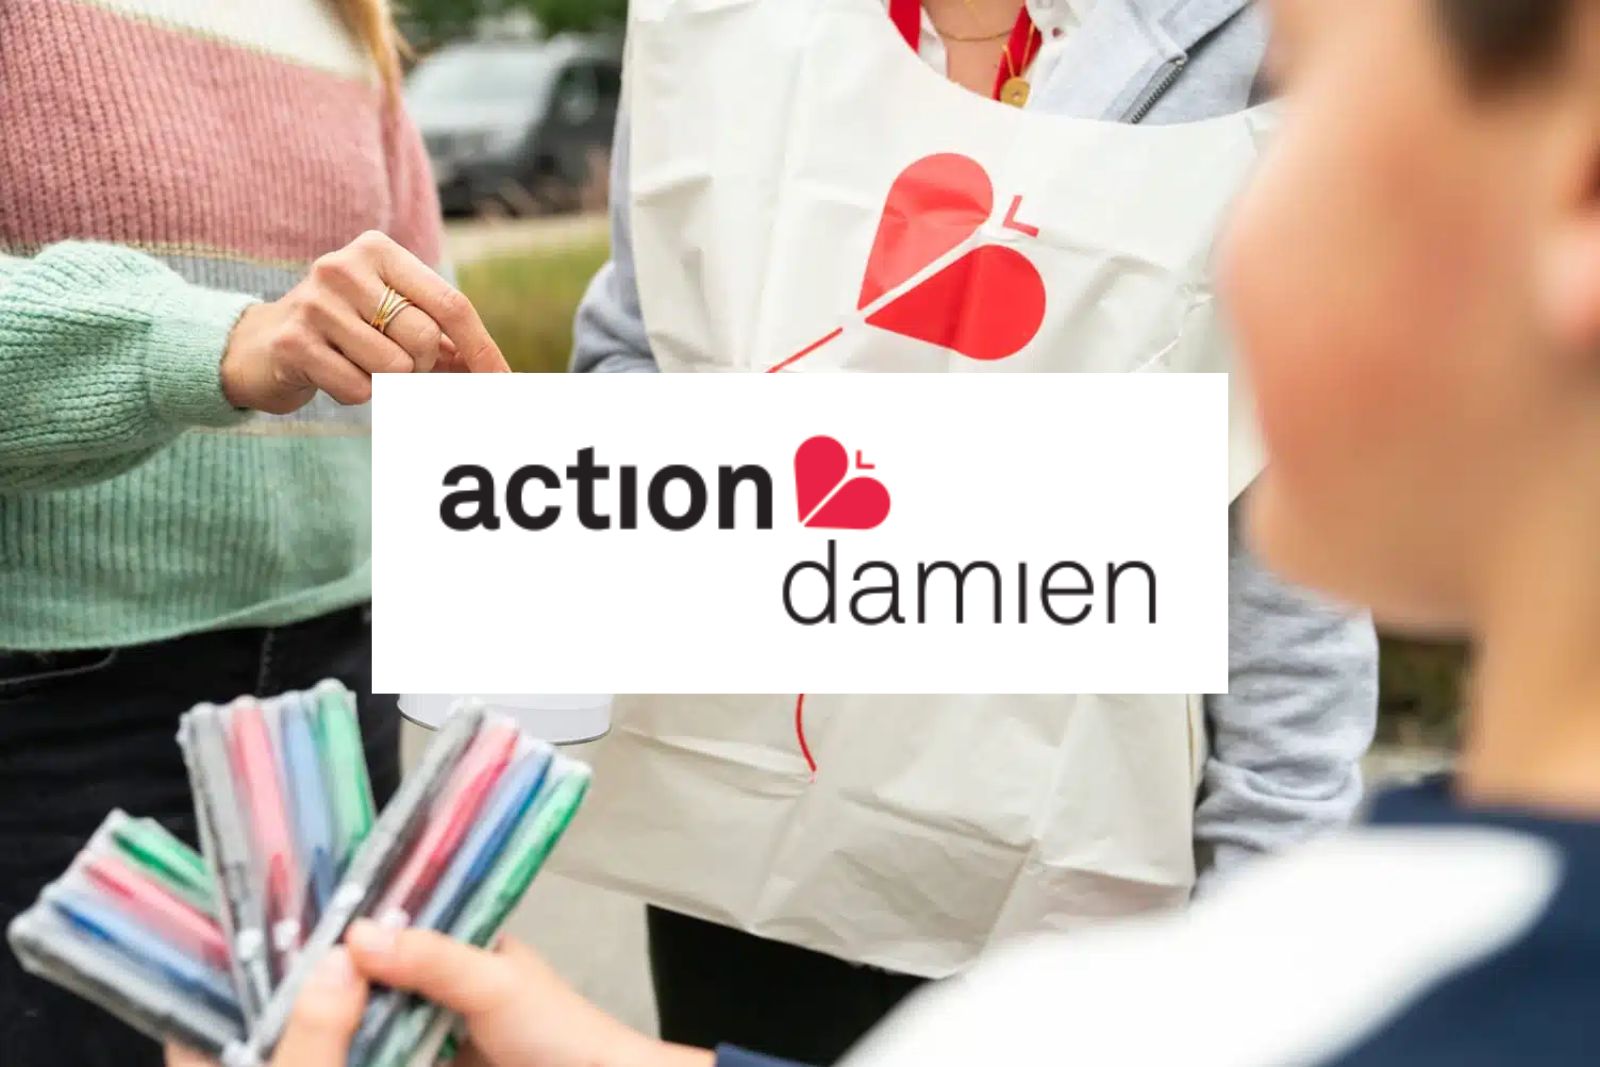 Action Damien